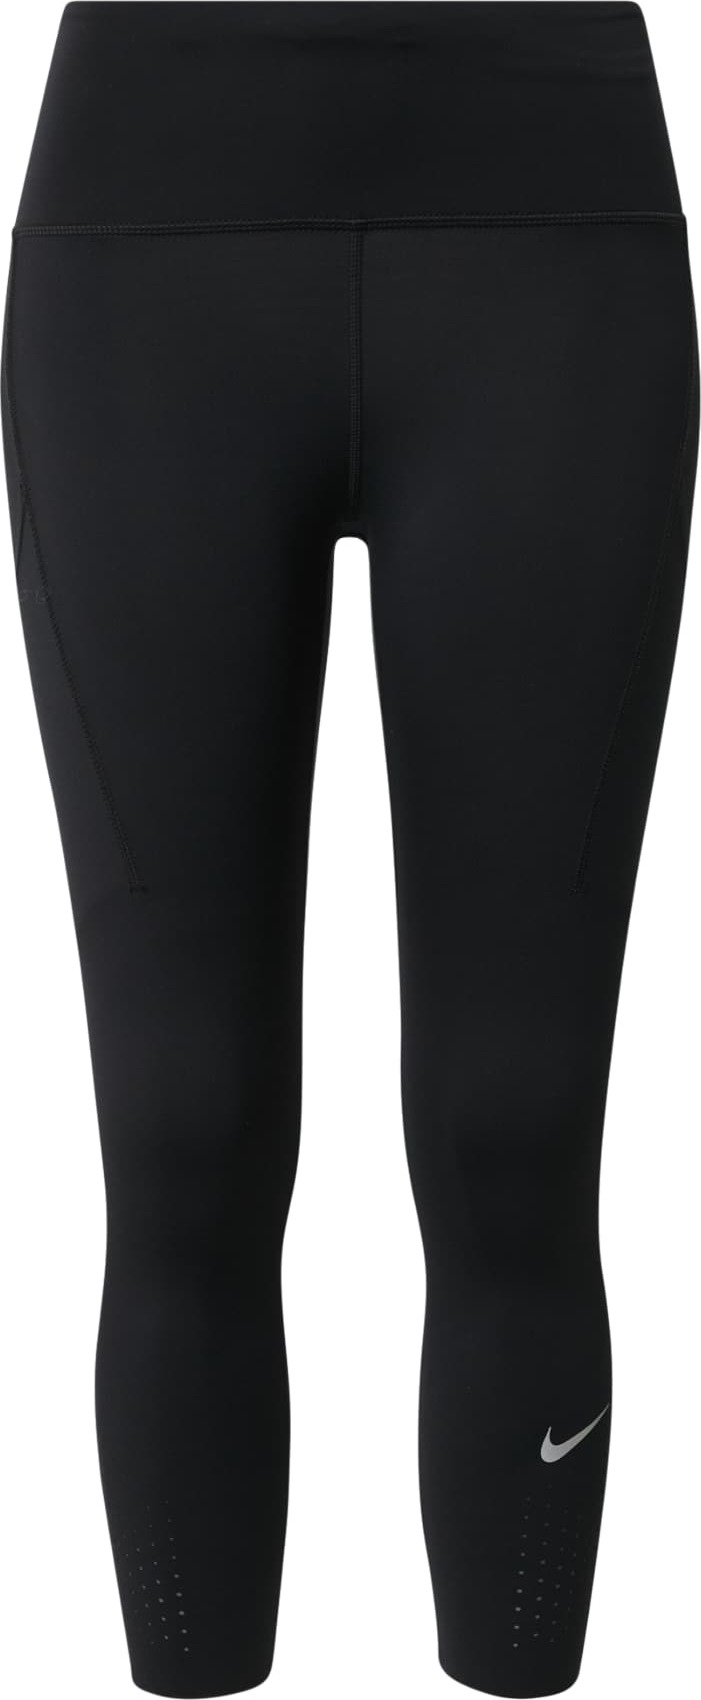 NIKE Sportovní kalhoty 'Epic Luxe' černá / světle šedá